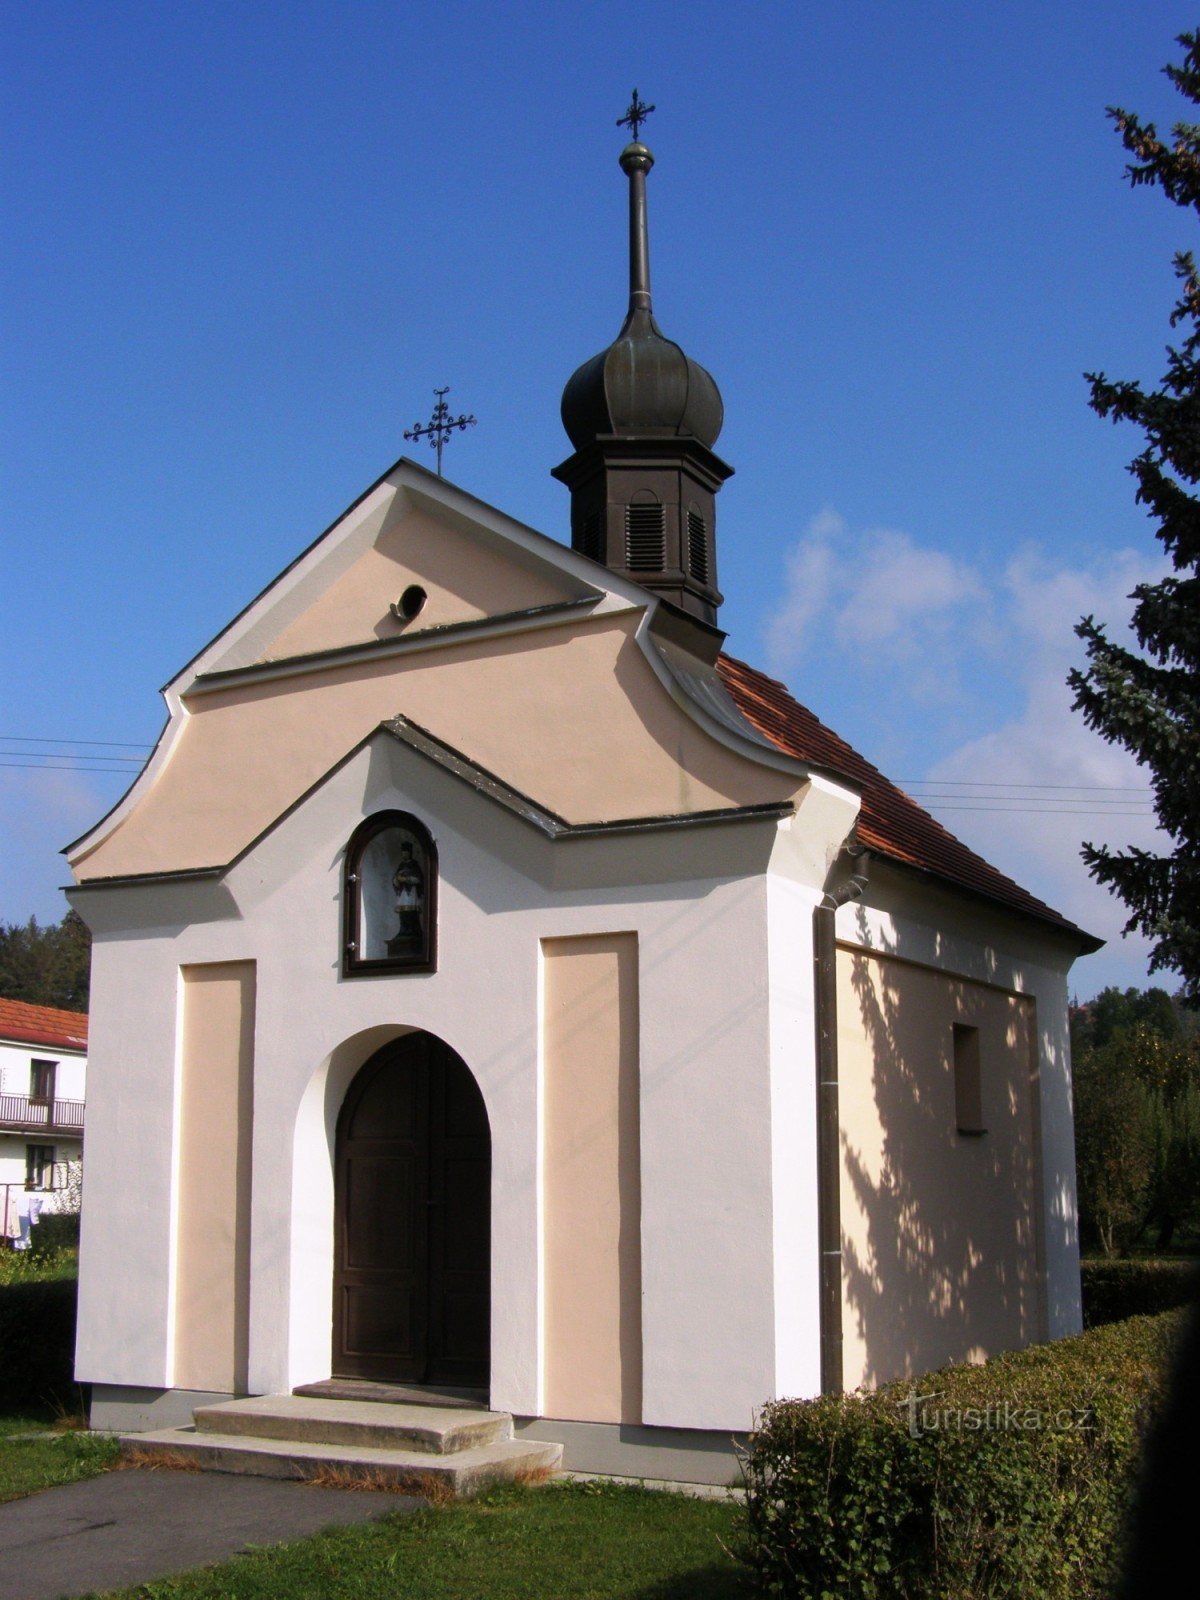 Poříčí lângă Litomyšle - capela Sf. Jan Nepomucký